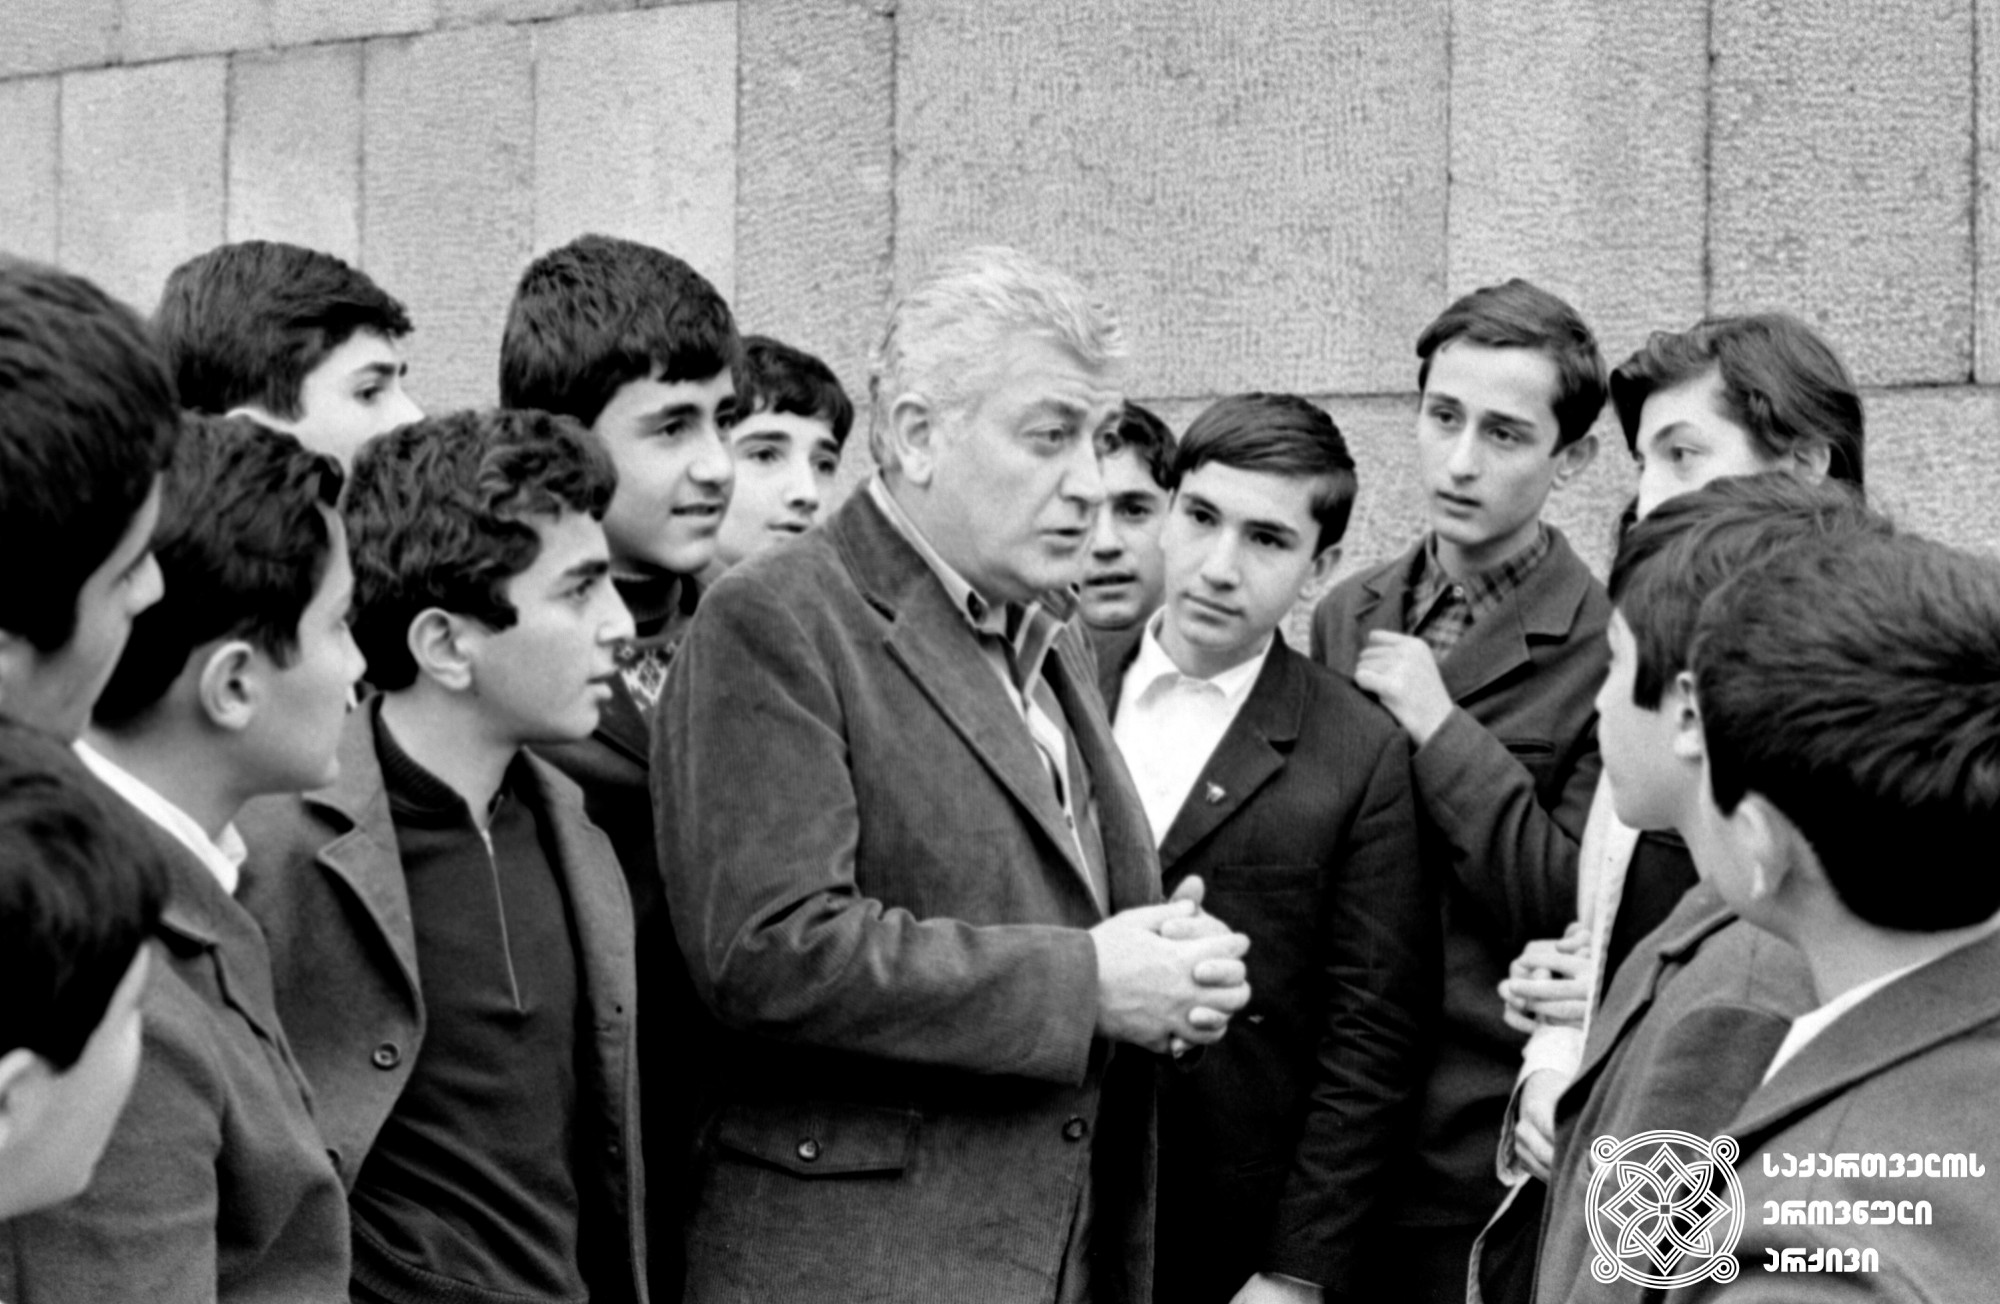 რამაზ ჩხიკვაძე მოსწავლეებთან ერთად. <br>
ალექსანდრე სააკოვის ფოტო. <br>
1973 წელი. <br>

Ramaz Chkhikvadze with pupils. <br>
Photo by Alexander Saakov. <br>
1973. <br>